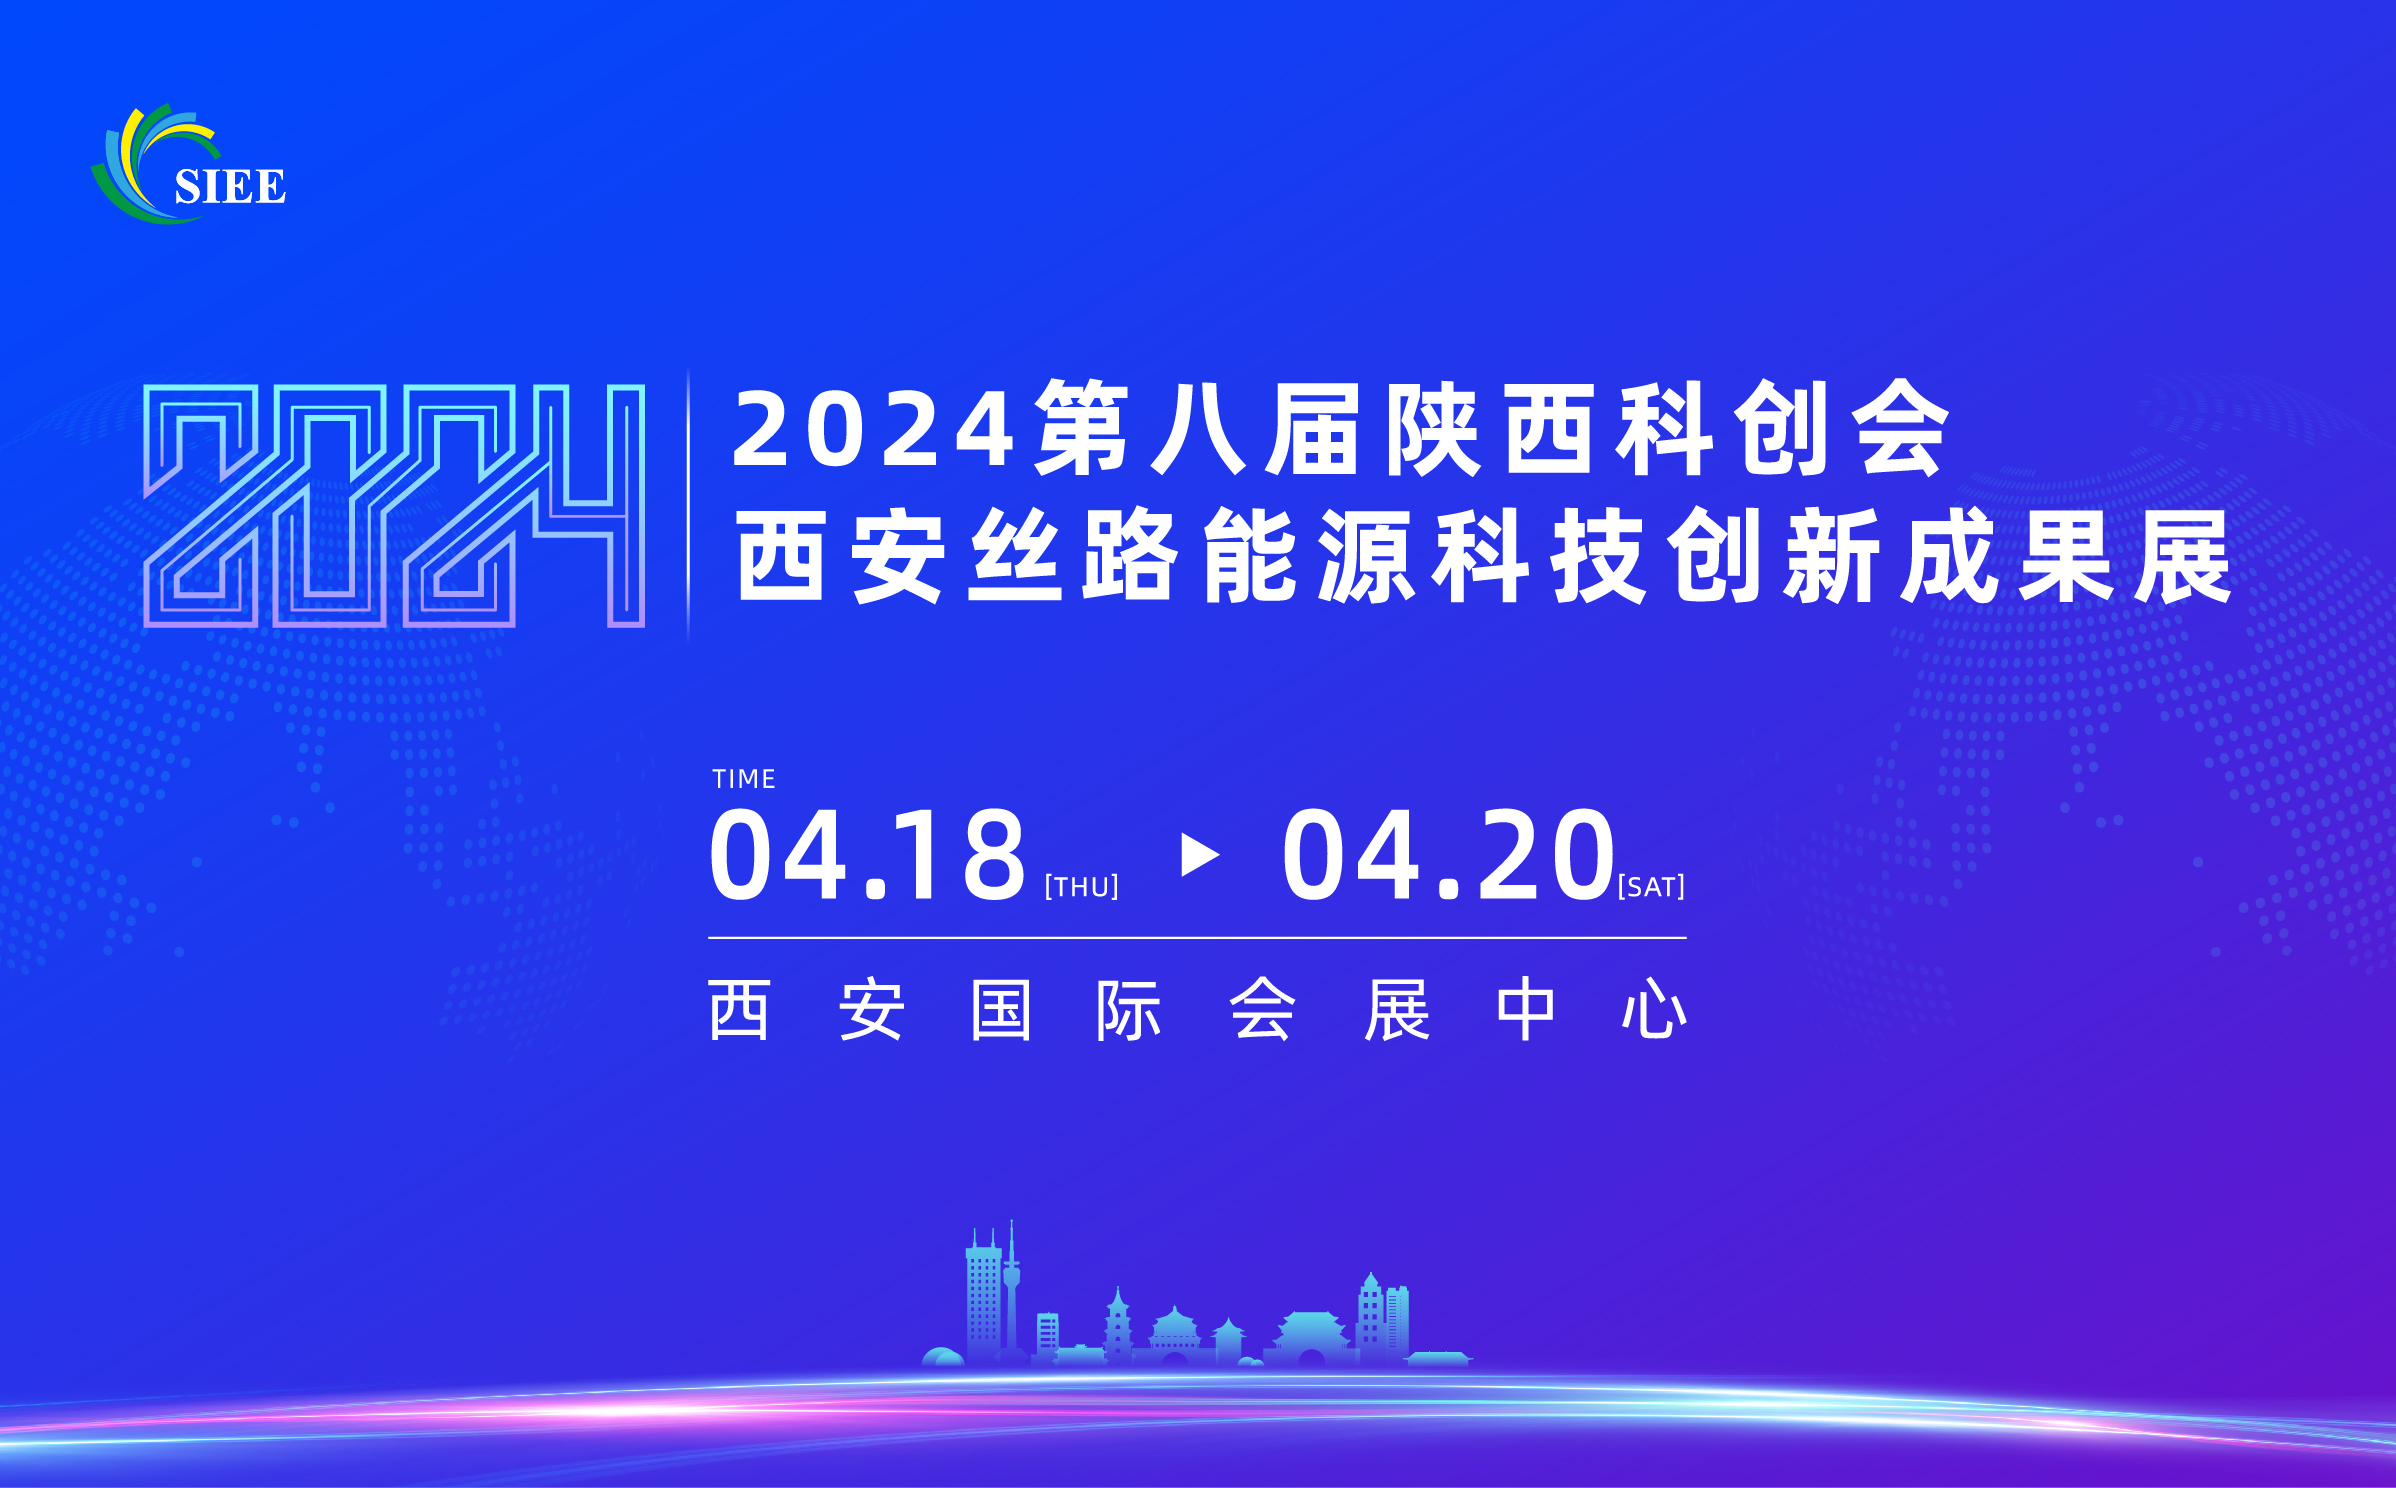 2024陕西科创会-西安丝路能源科技创新成果展